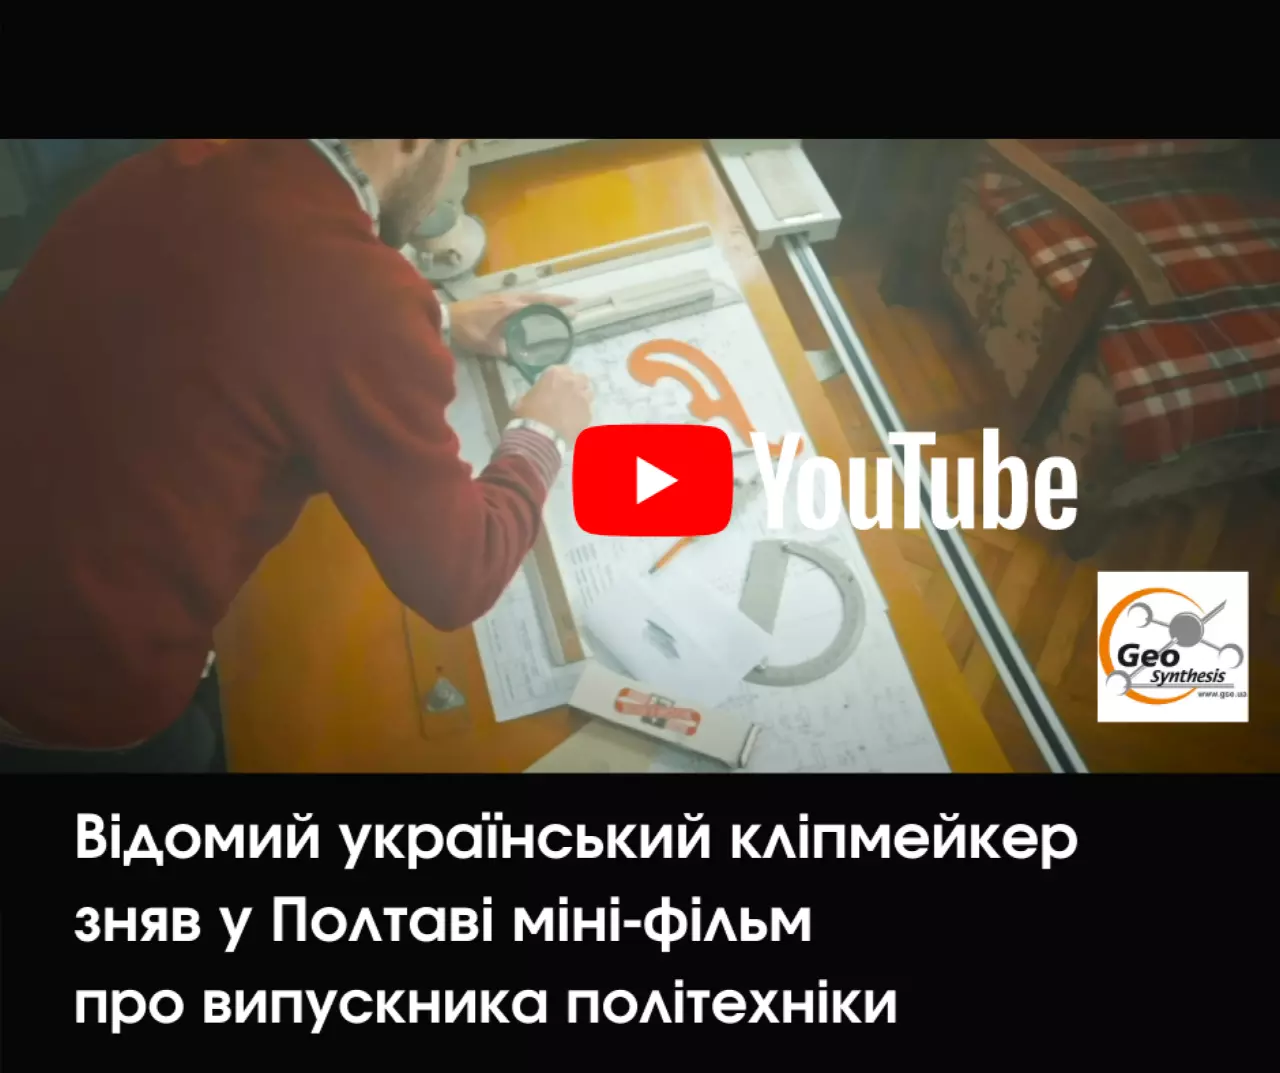 Відомий український кліпмейкер зняв у Полтаві міні-фільм про випускника політехніки